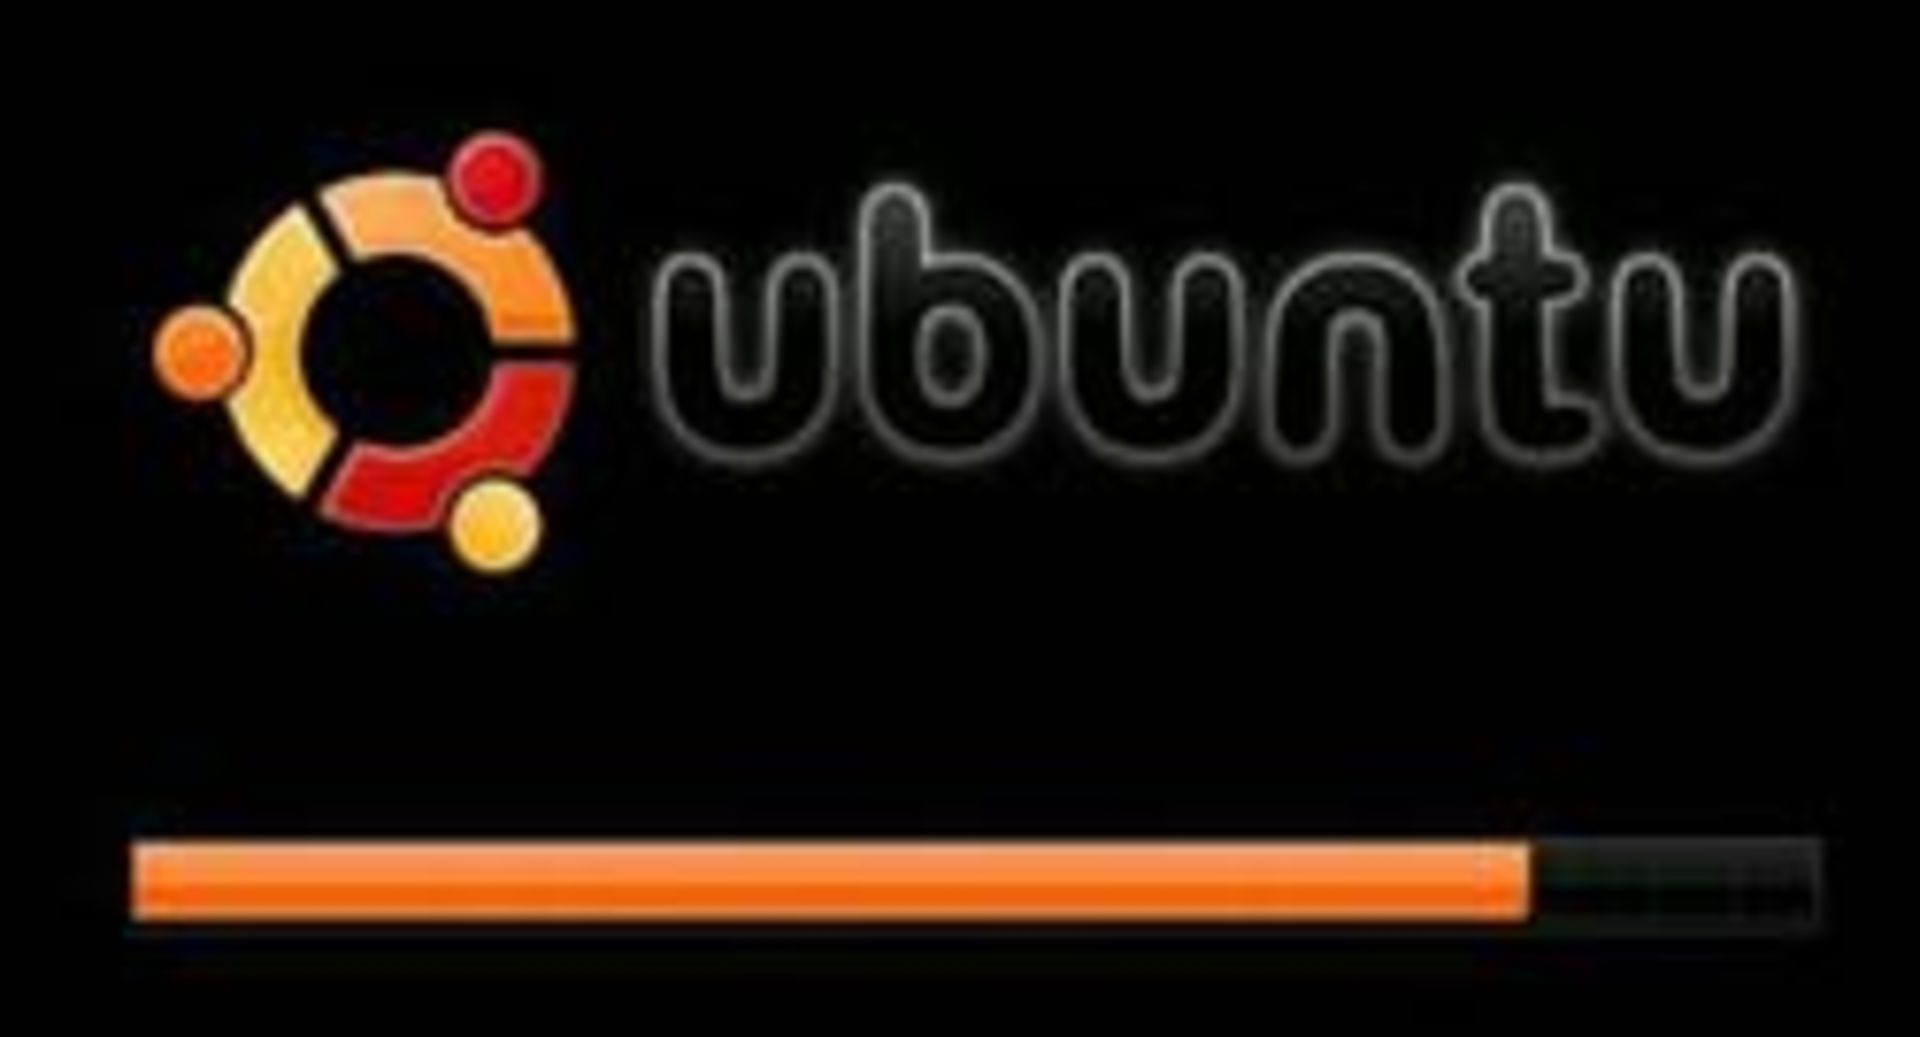 مرجع متخصصين ايران Ubuntu